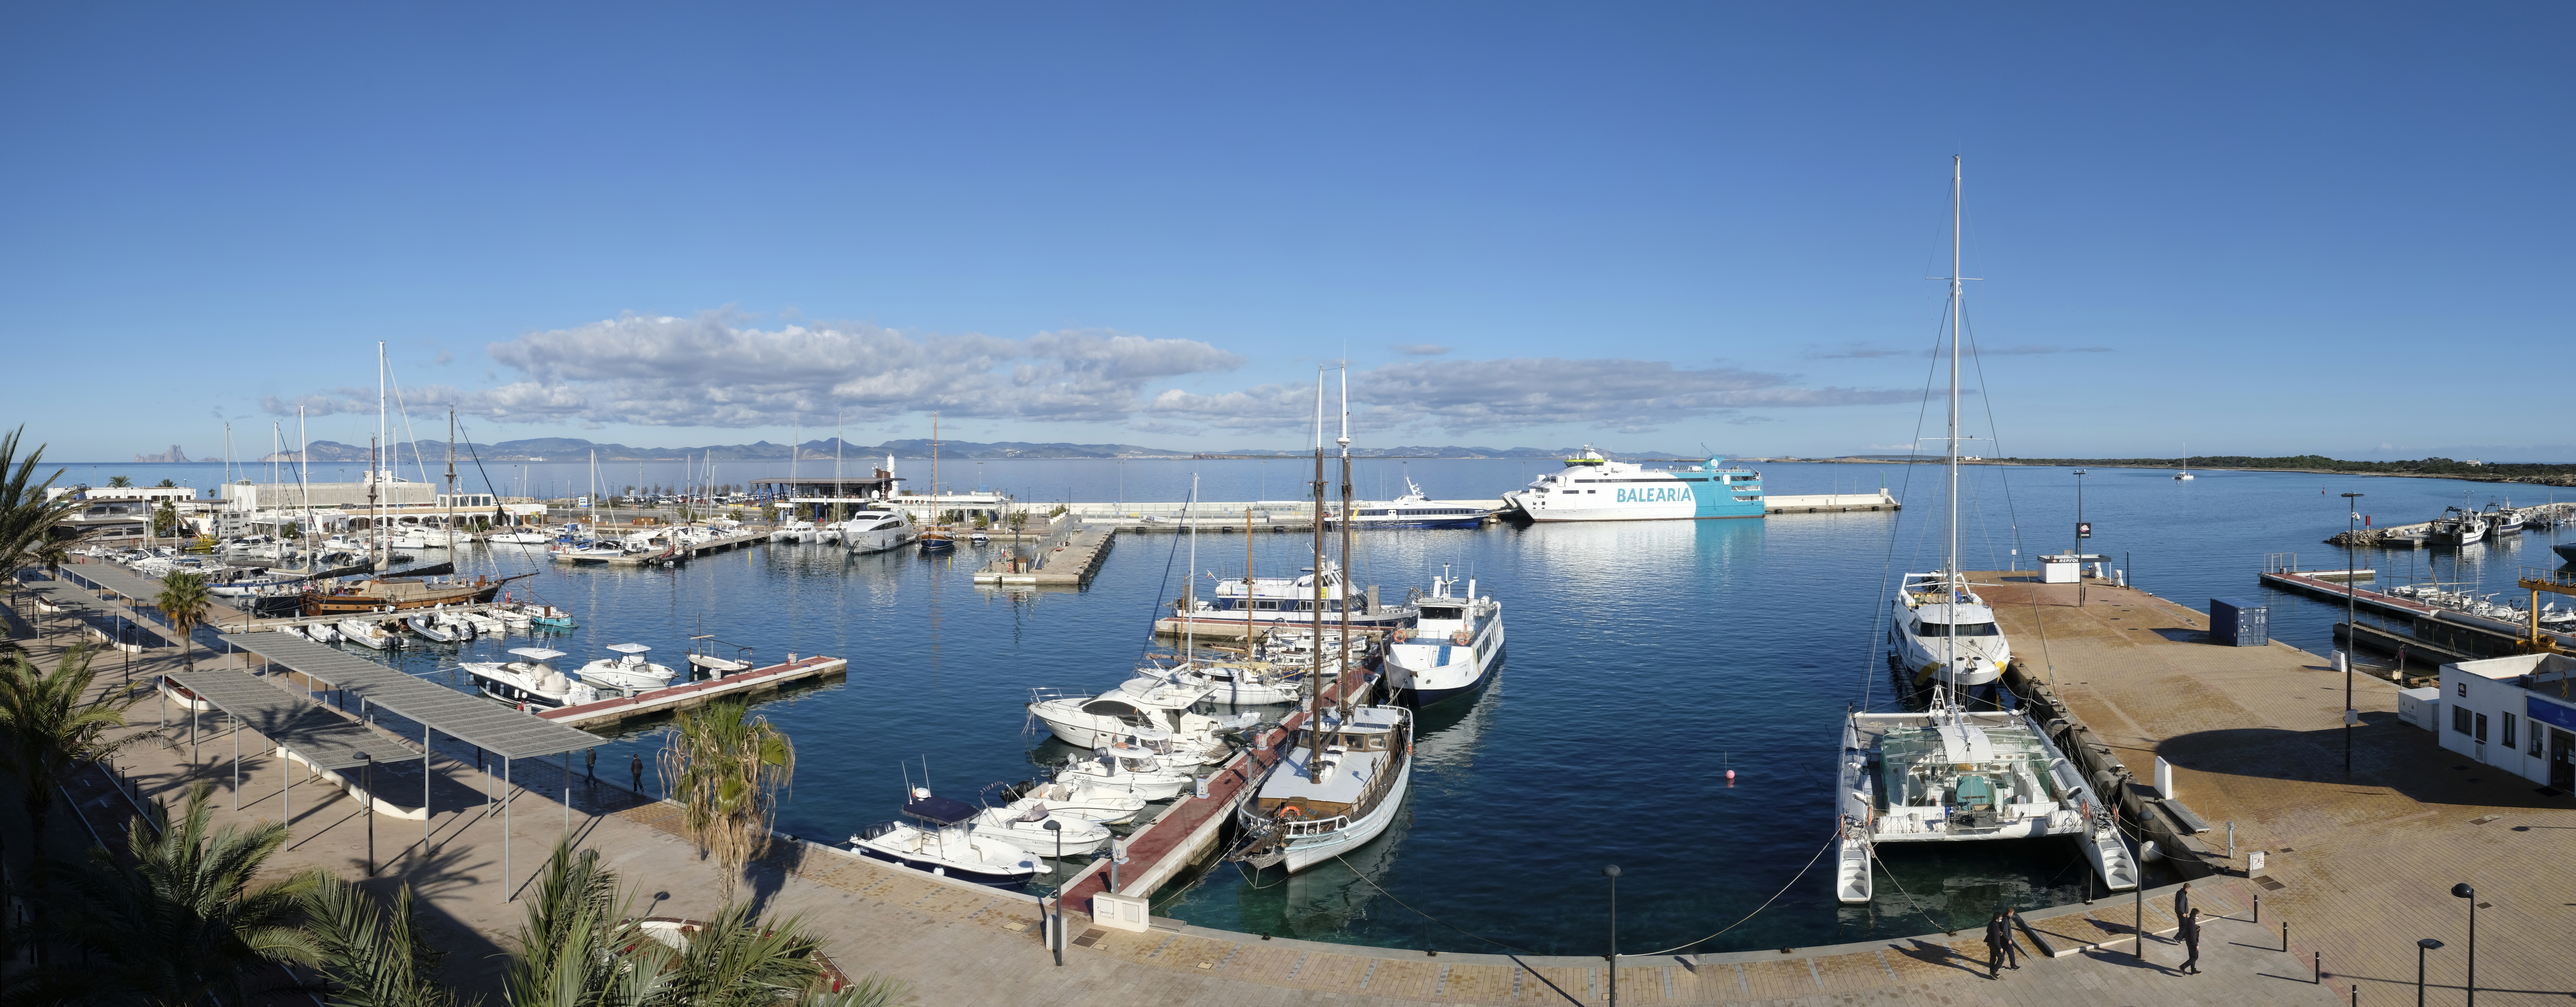 Puertos y Litorales Sostenibles, escollida la solució més avantatjosa per a la gestió d'una instal•lació d'una marina seca per a embarcacions xàrter de petita eslora al port de la Savina